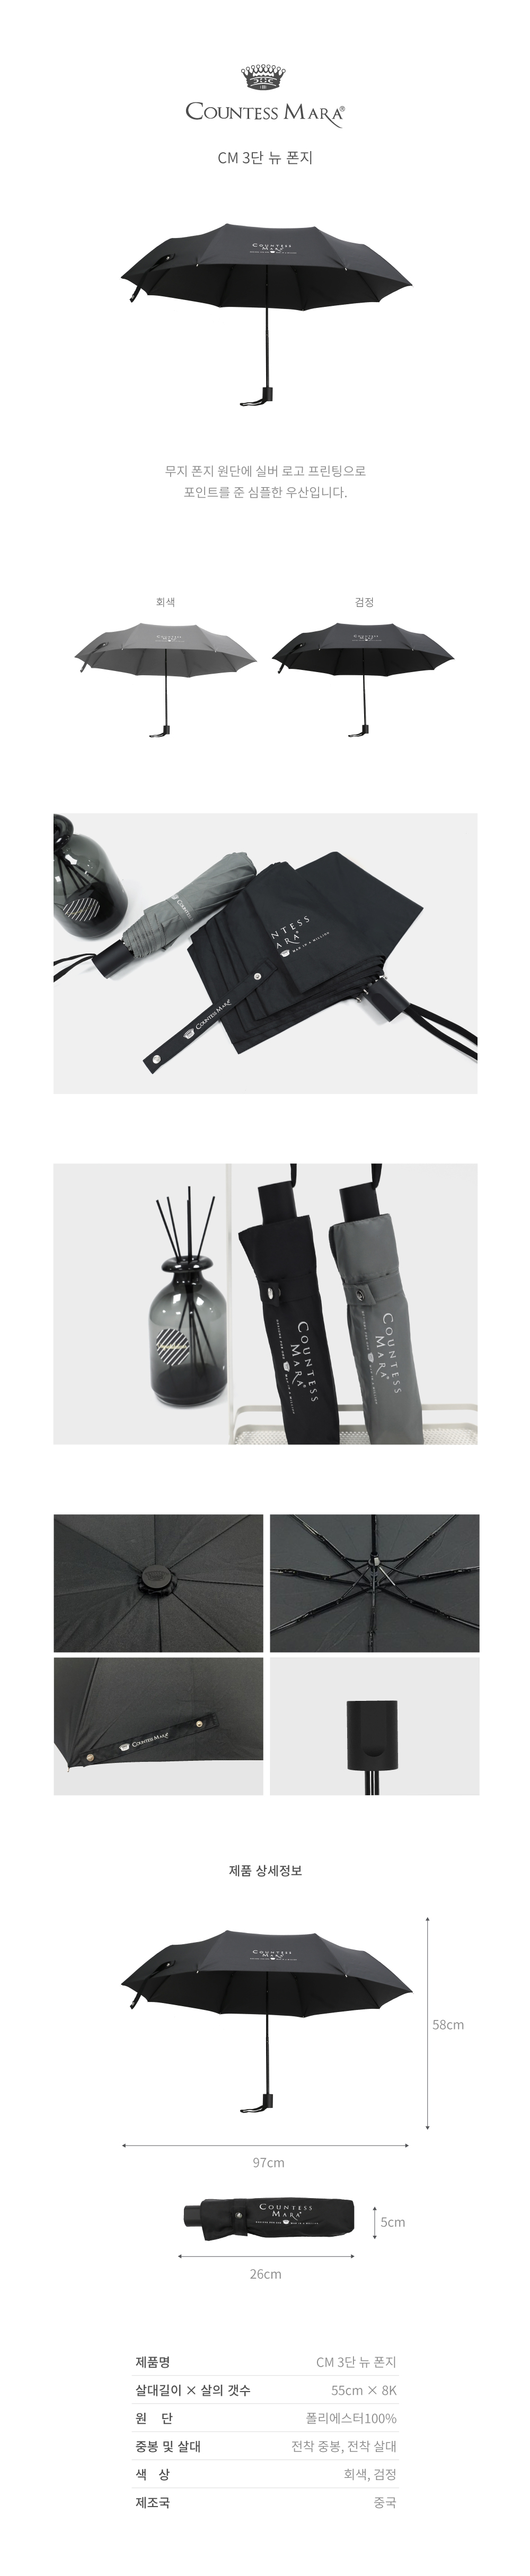 무지 폰지 원단에 실버 로고 프린팅으로 포인트를 준 심플한 우산입니다.